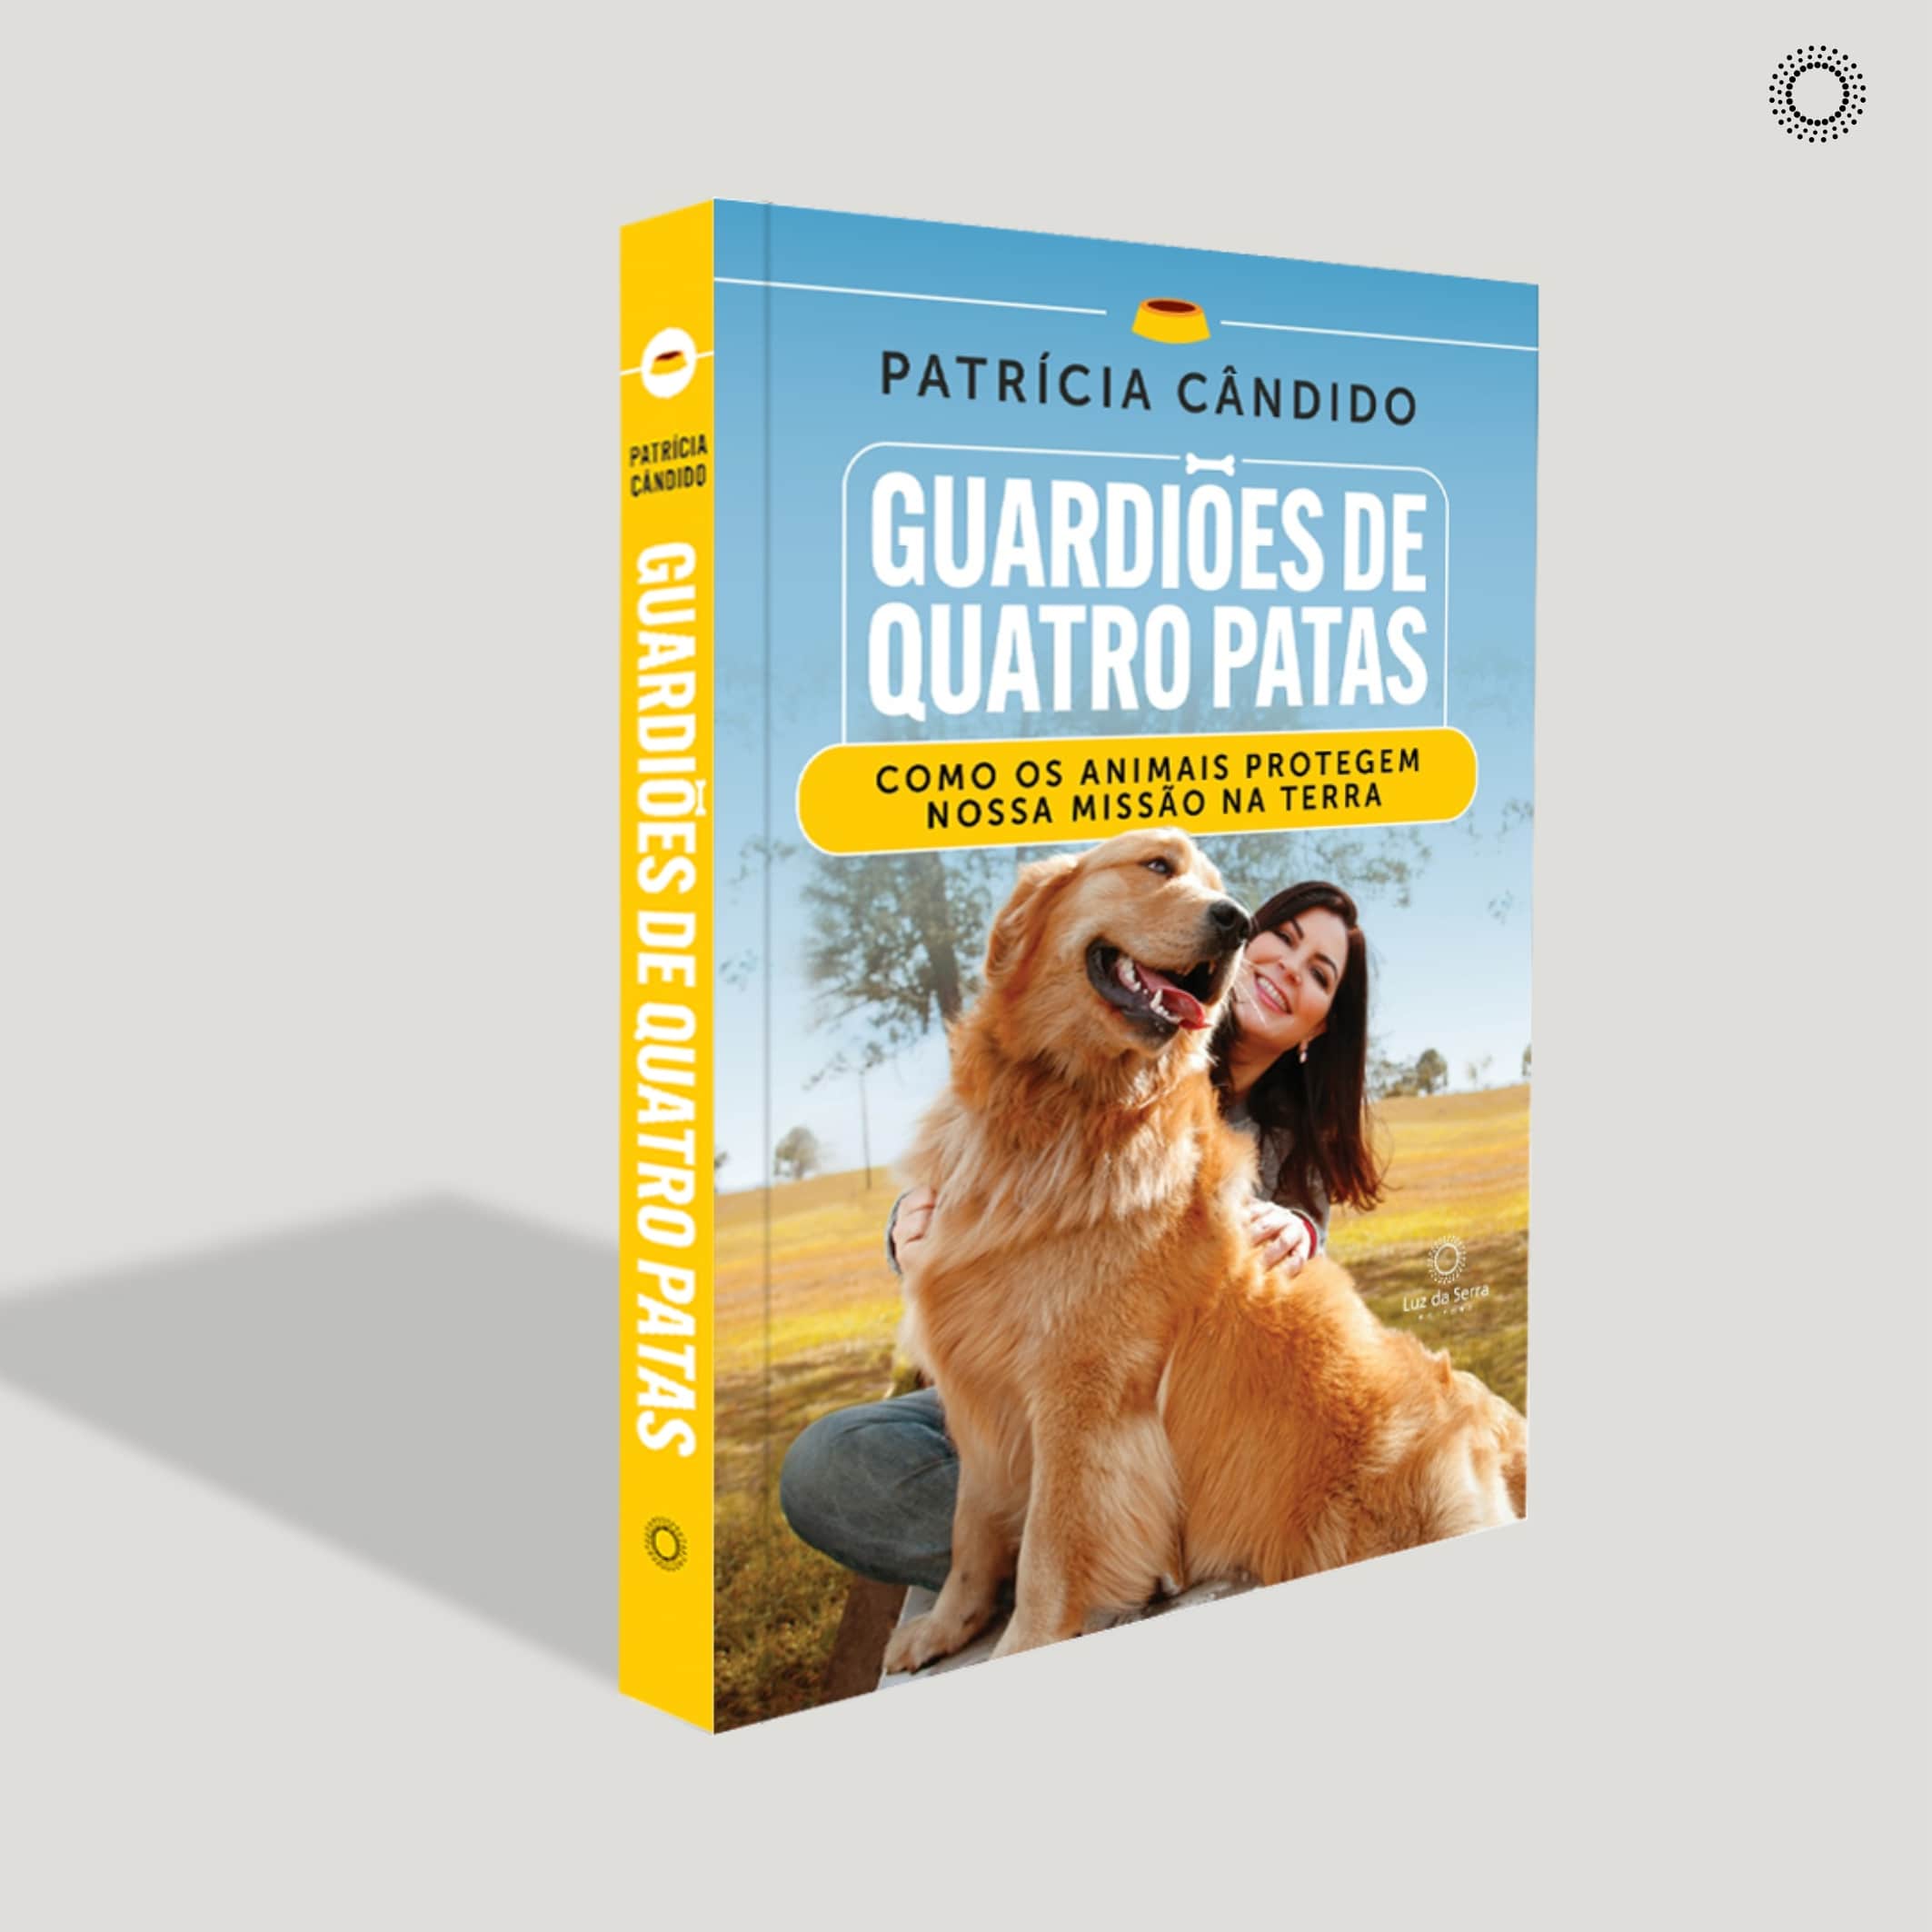 Capa do livro Guardiões de Quatro Patas com foto de Patrícia Cândido fazendo carinho no golden retriever dela - espiritualidade dos animais